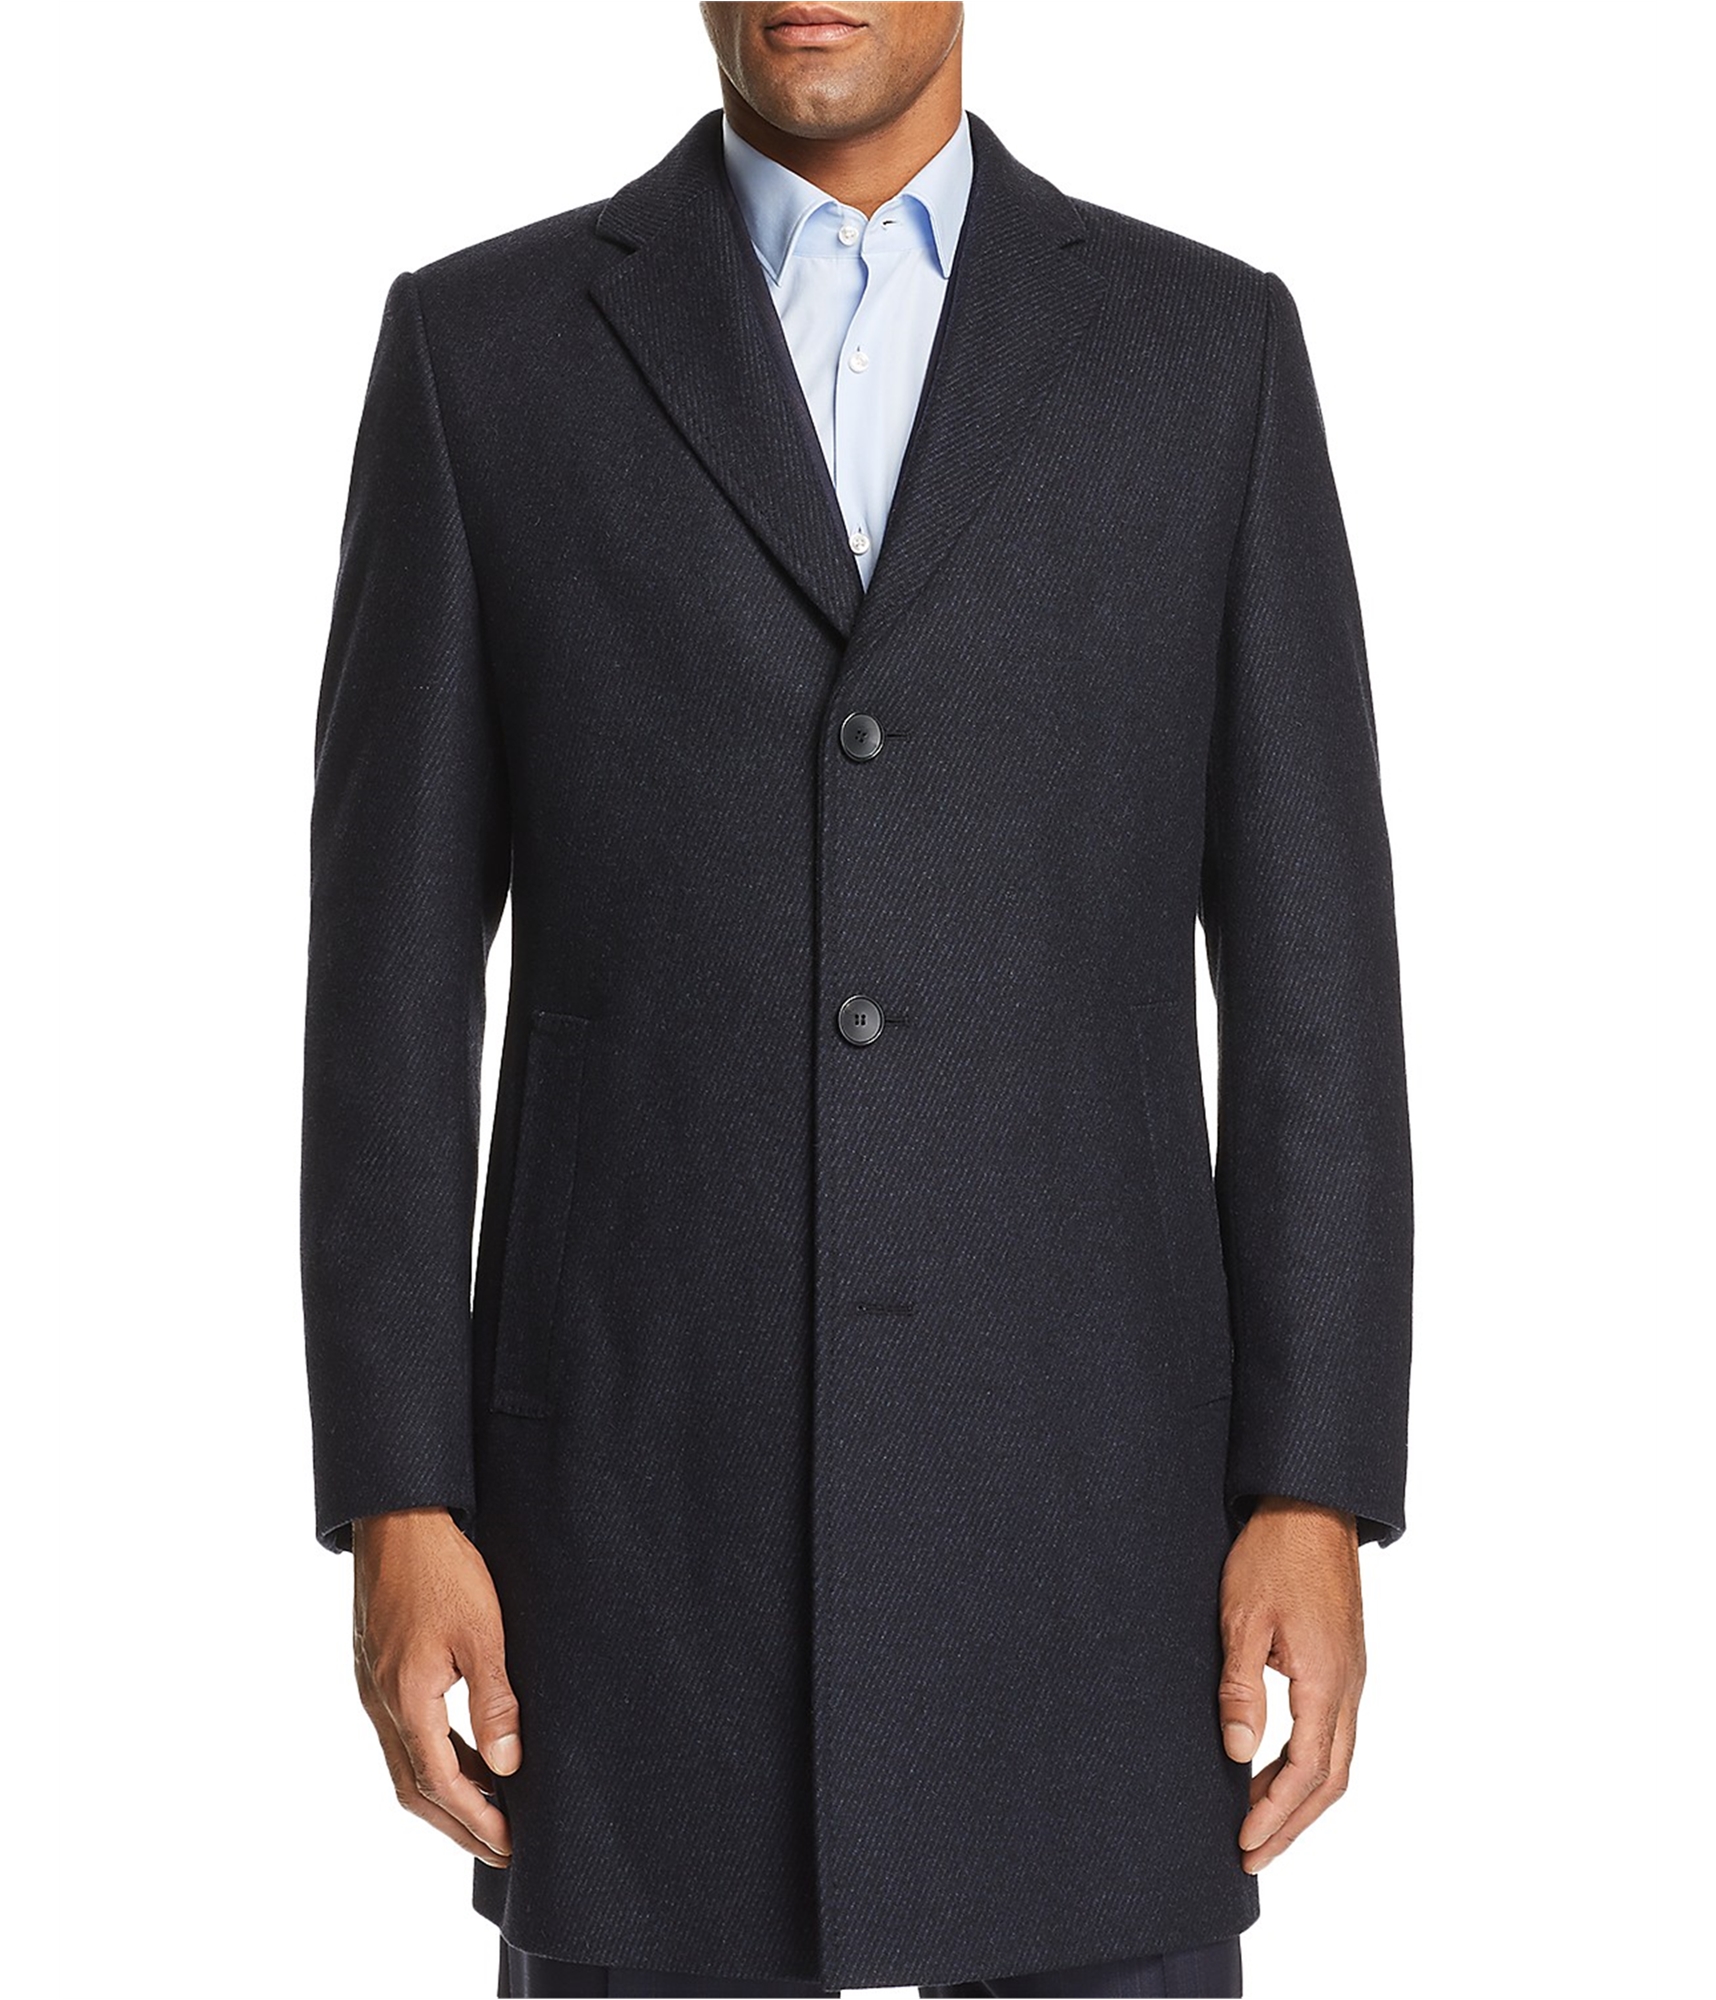 Hugo Boss Mens Twill Top Coat, Blue, 40 Regular | eBay